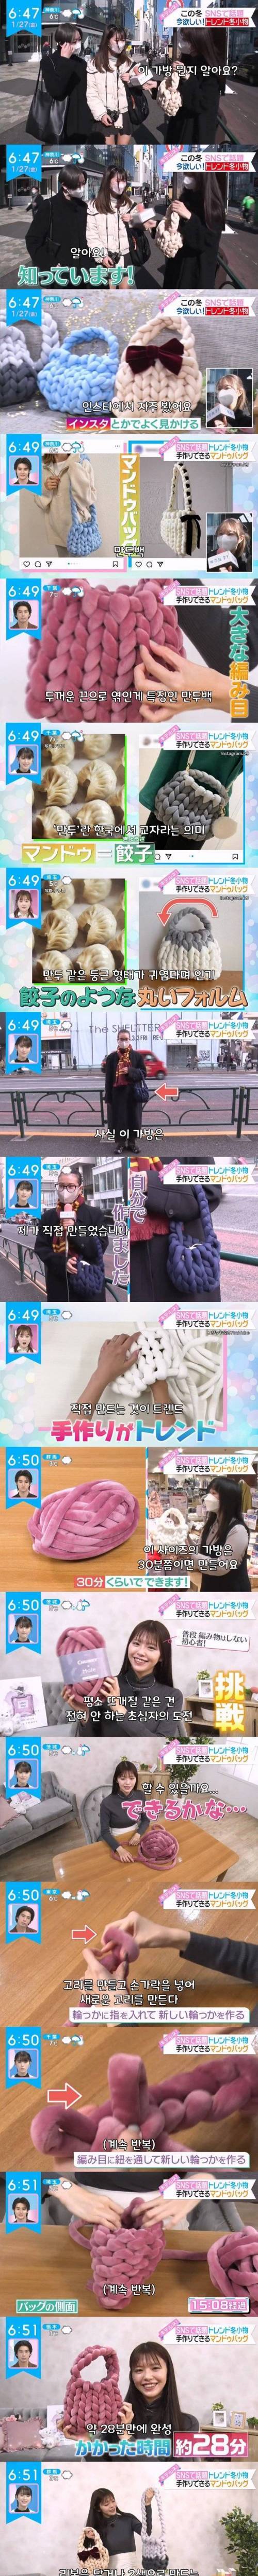 1 일본에서 유행한 만두가방.jpg